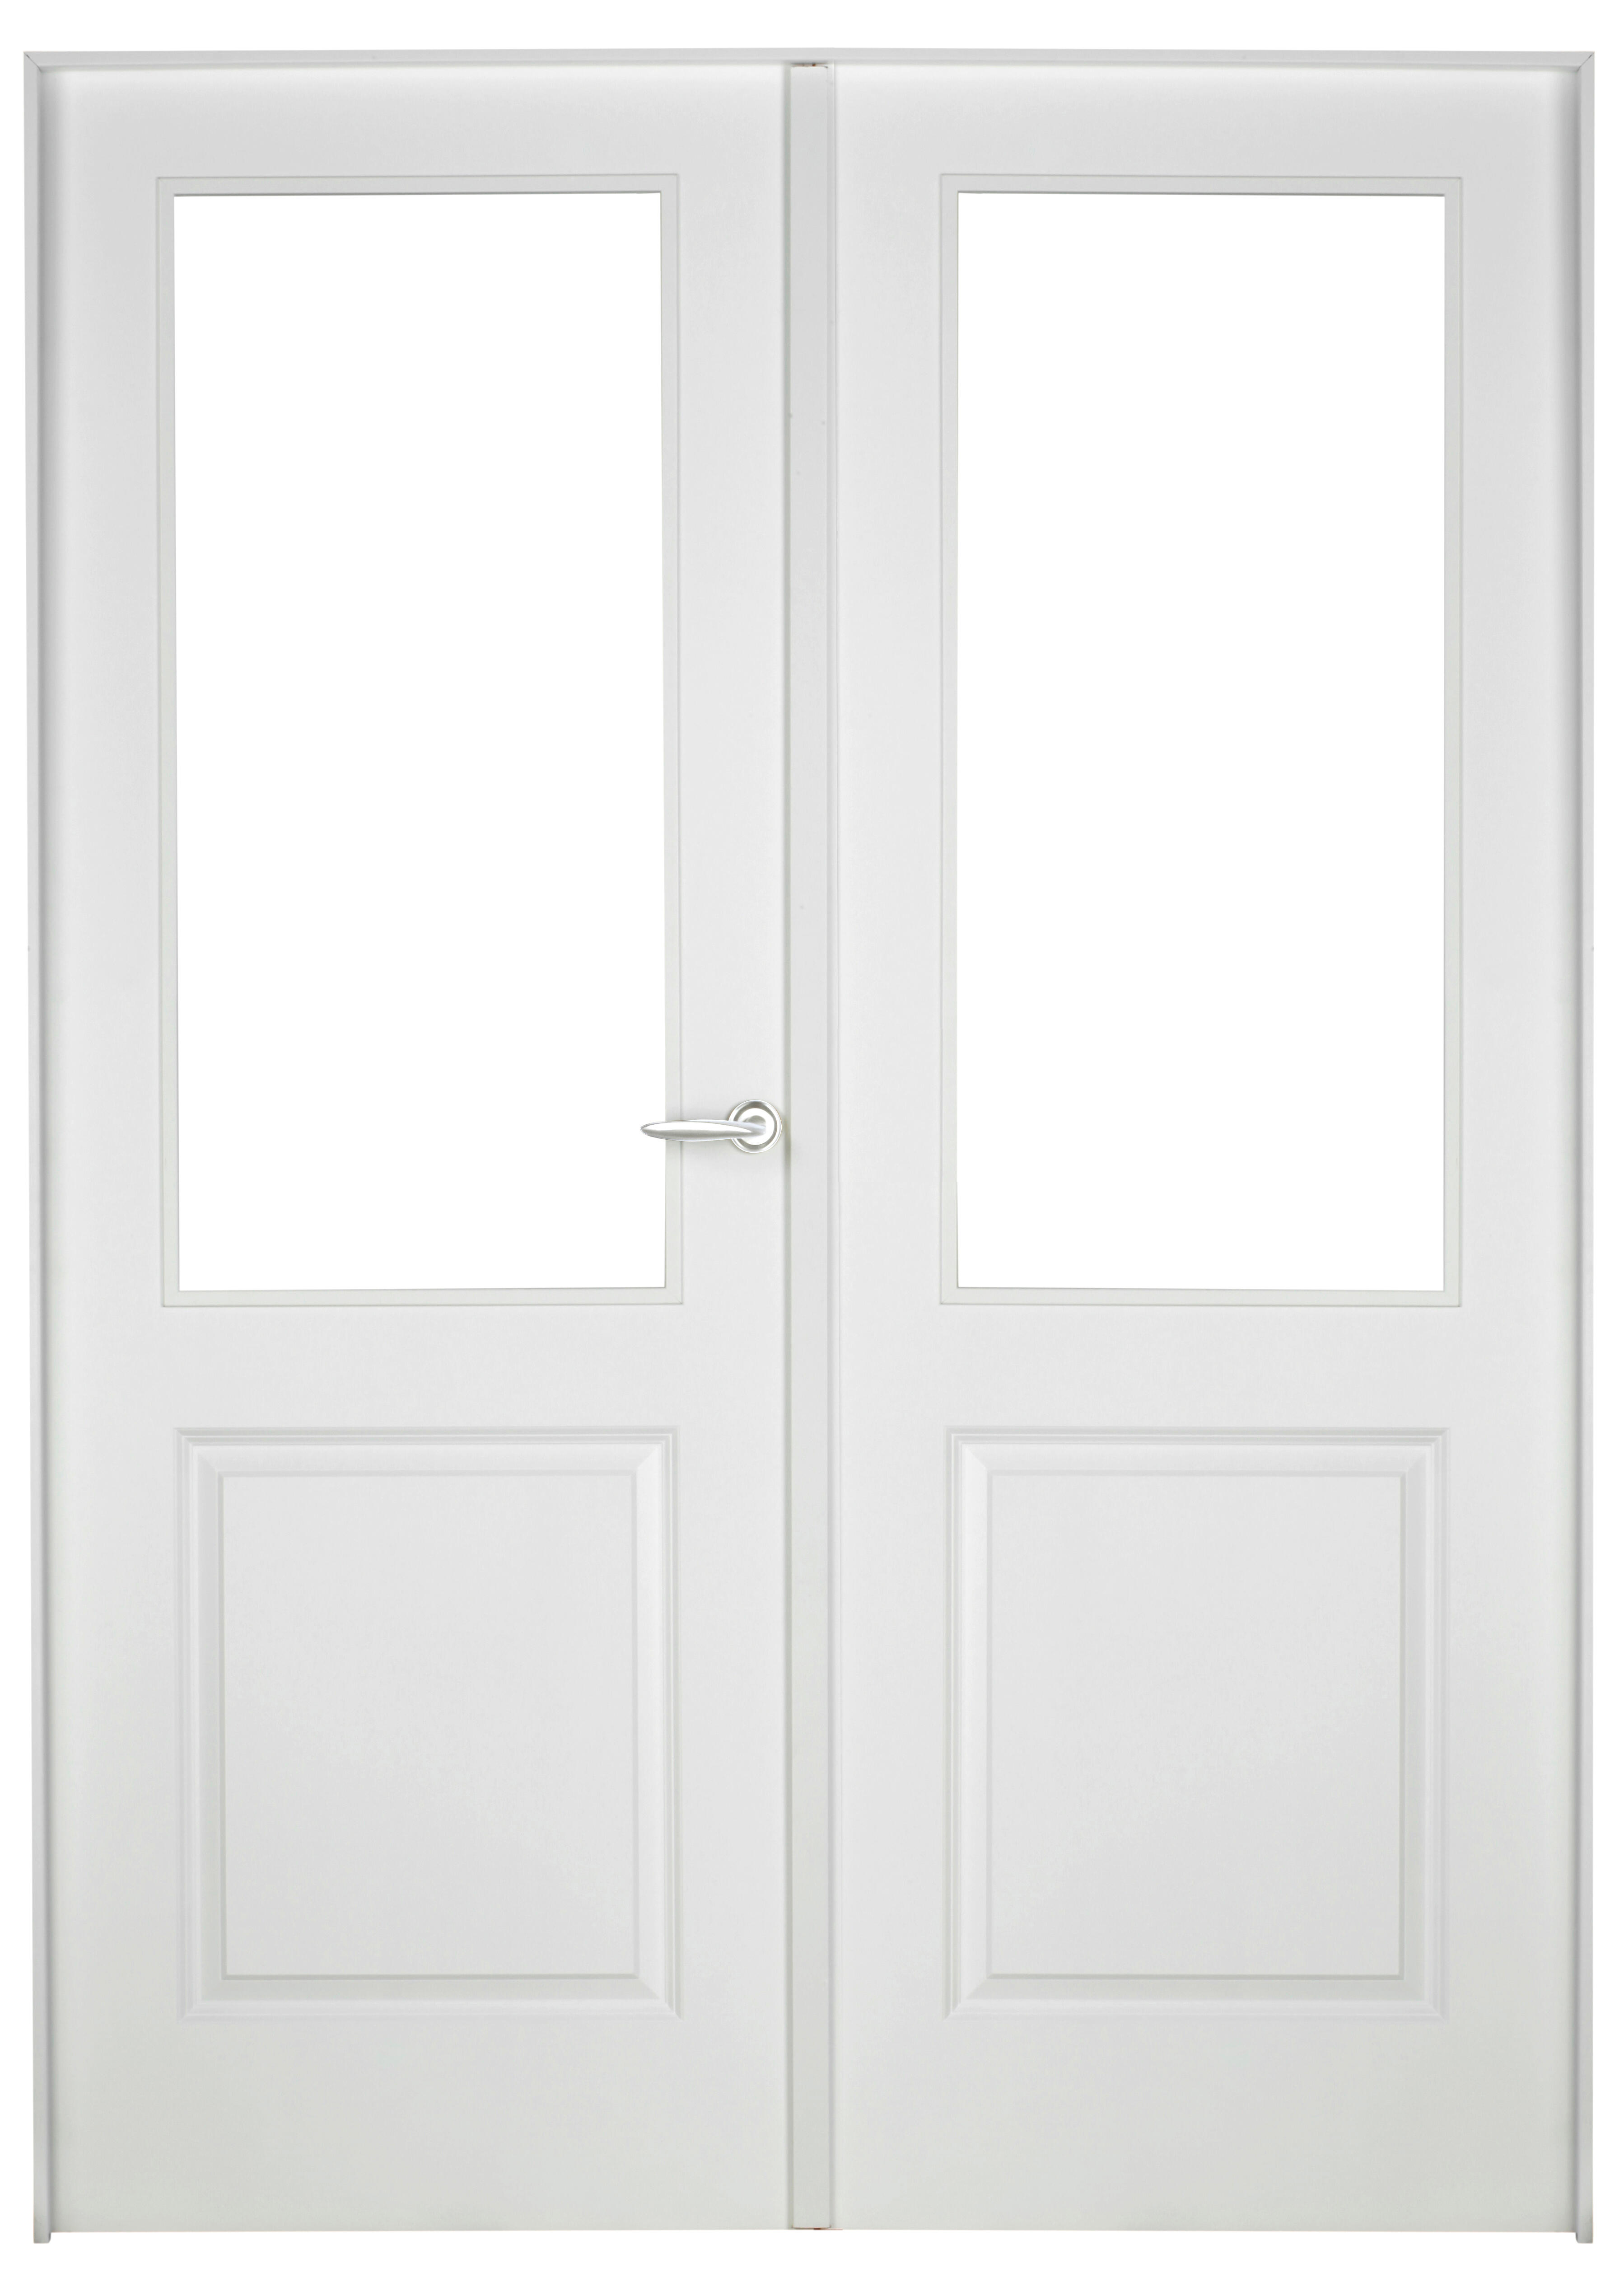 Puerta abatible bonn blanca aero blanco izquierda con cristal de 90x30 y 125cm